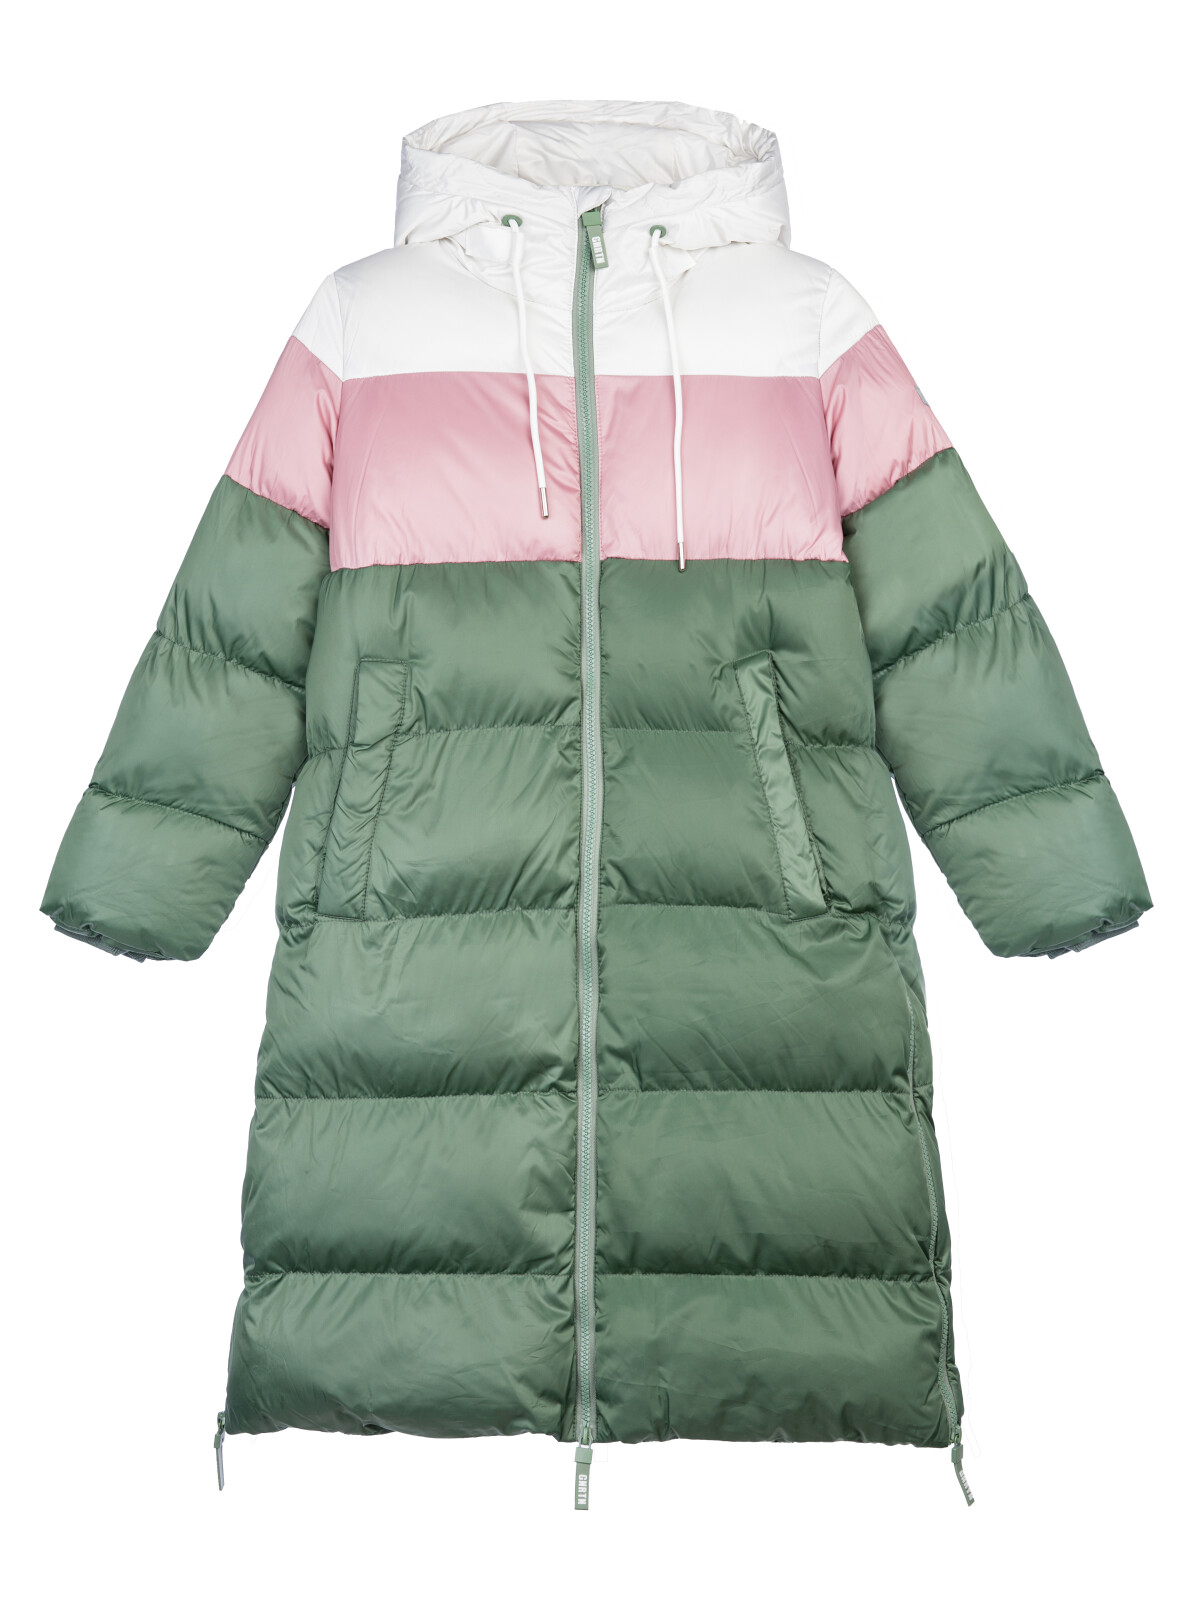 Пальто текстильное для девочек PlayToday, серебро,коричневый,темно-зеленый, 128 пуховик женский mountain hardwear ghost whisperer 2™ jacket коричневый